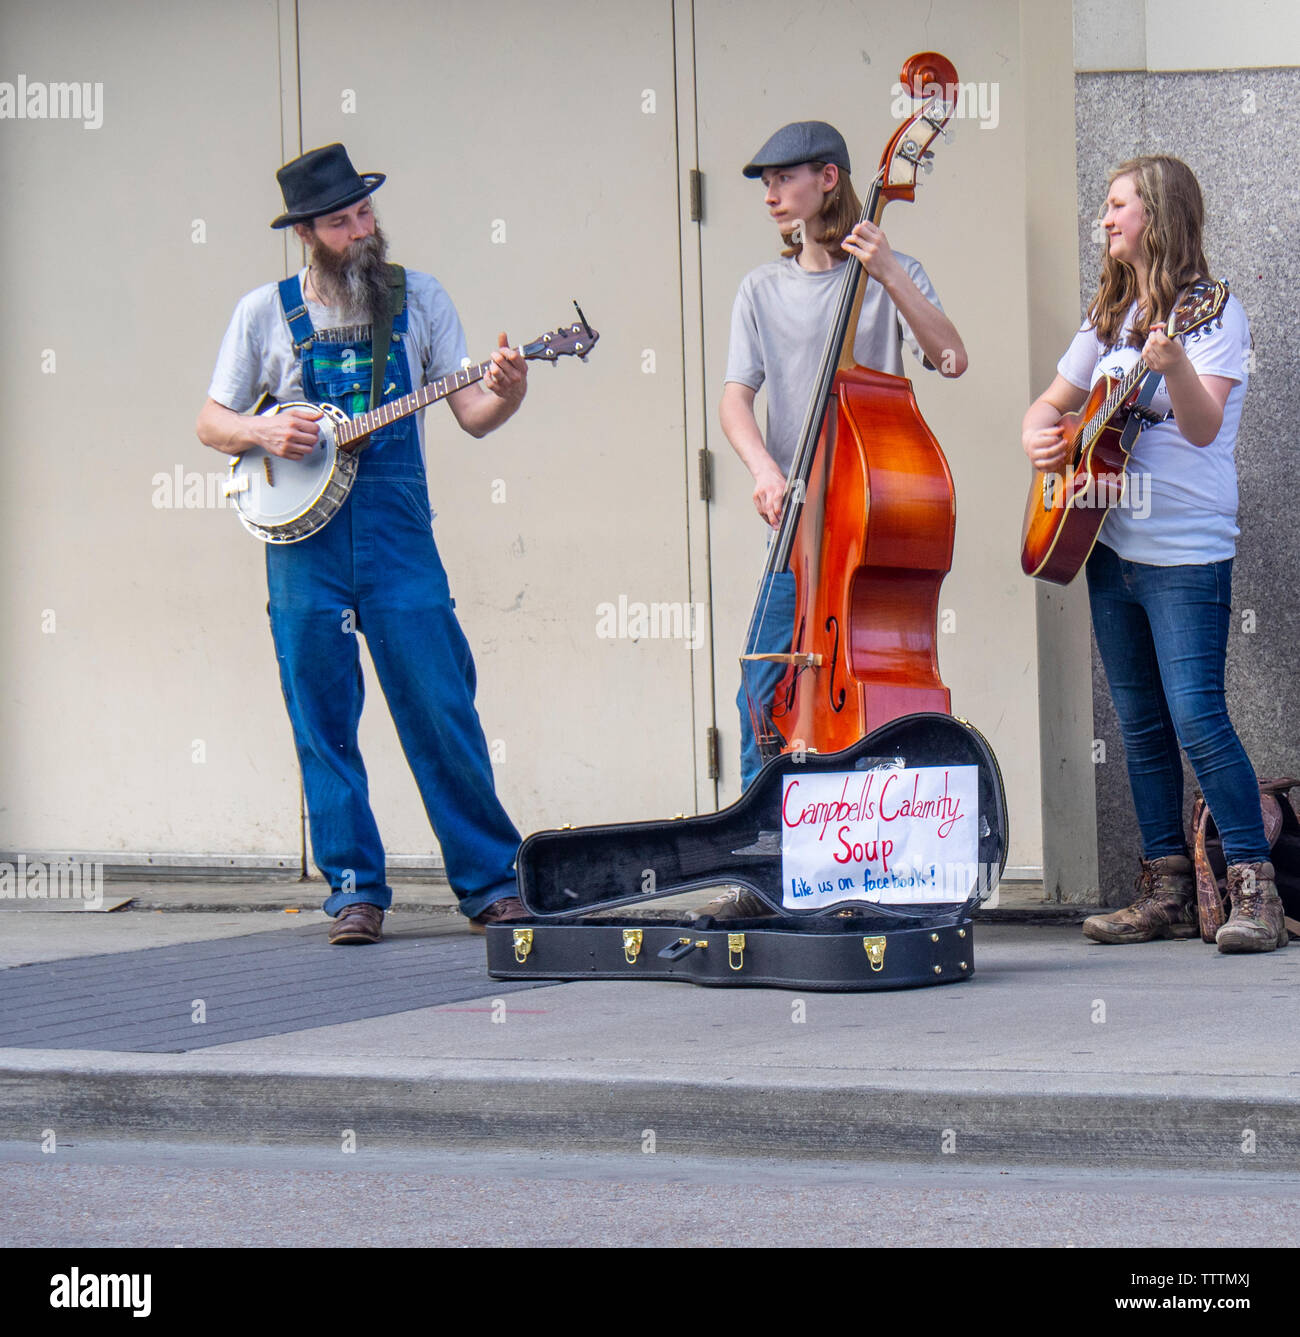 Contrebasse, banjo et guitare acoustique en calamité Campbells Soup groupe musical de la rue dans la rue à Nashville Tennessee USA. Banque D'Images